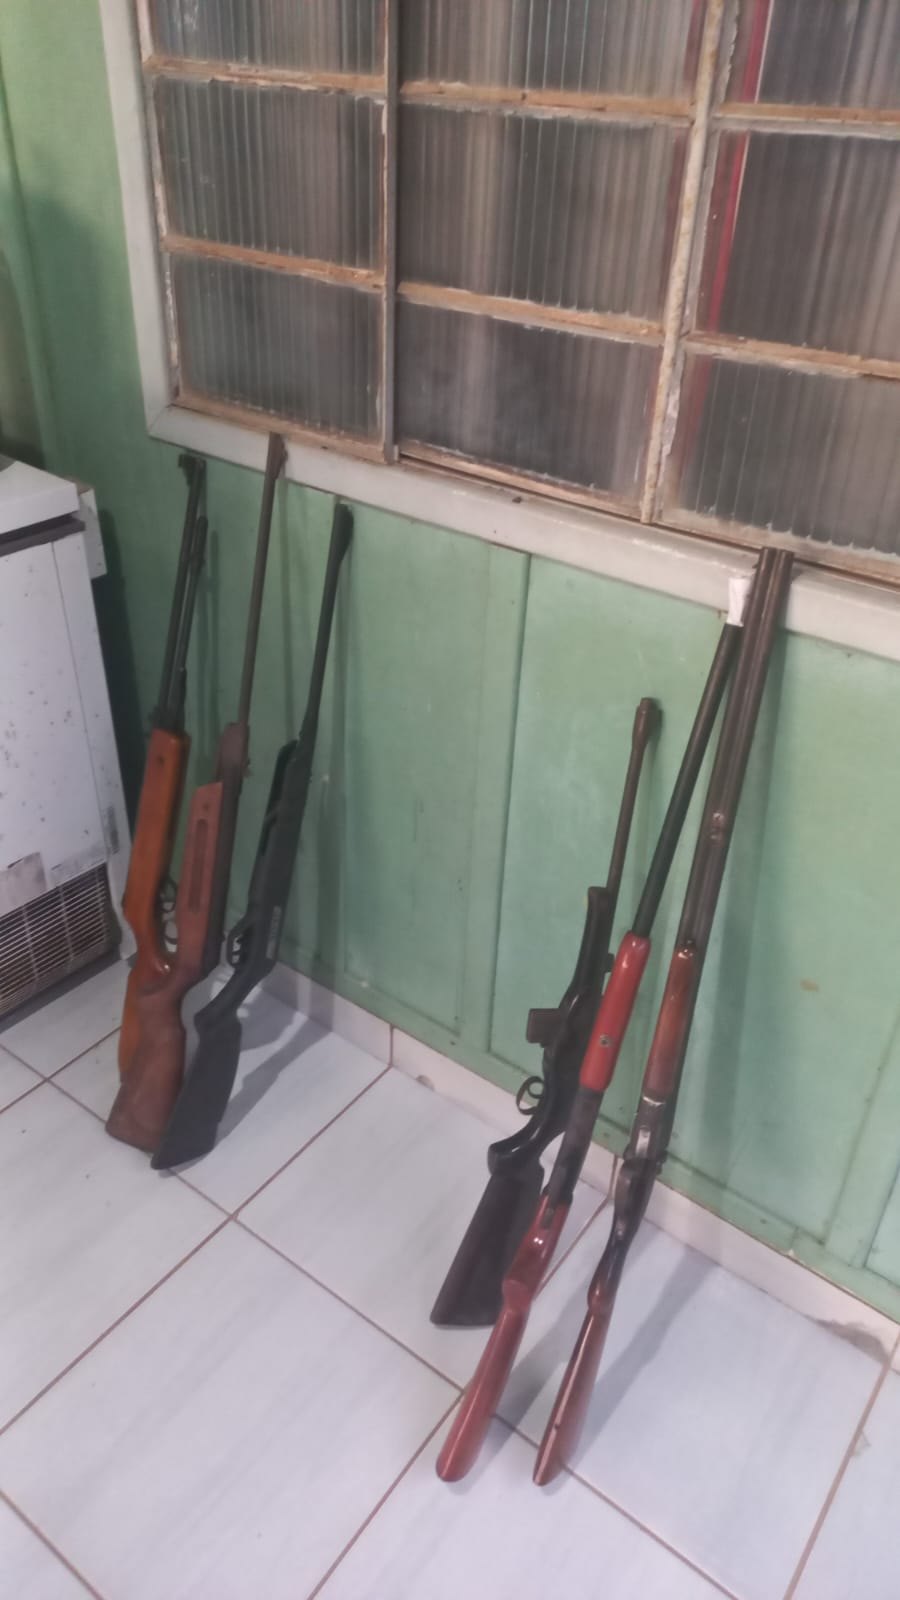 VALE DAS ARMAS: PF realiza operação contra fábrica e venda de armas caseiras 